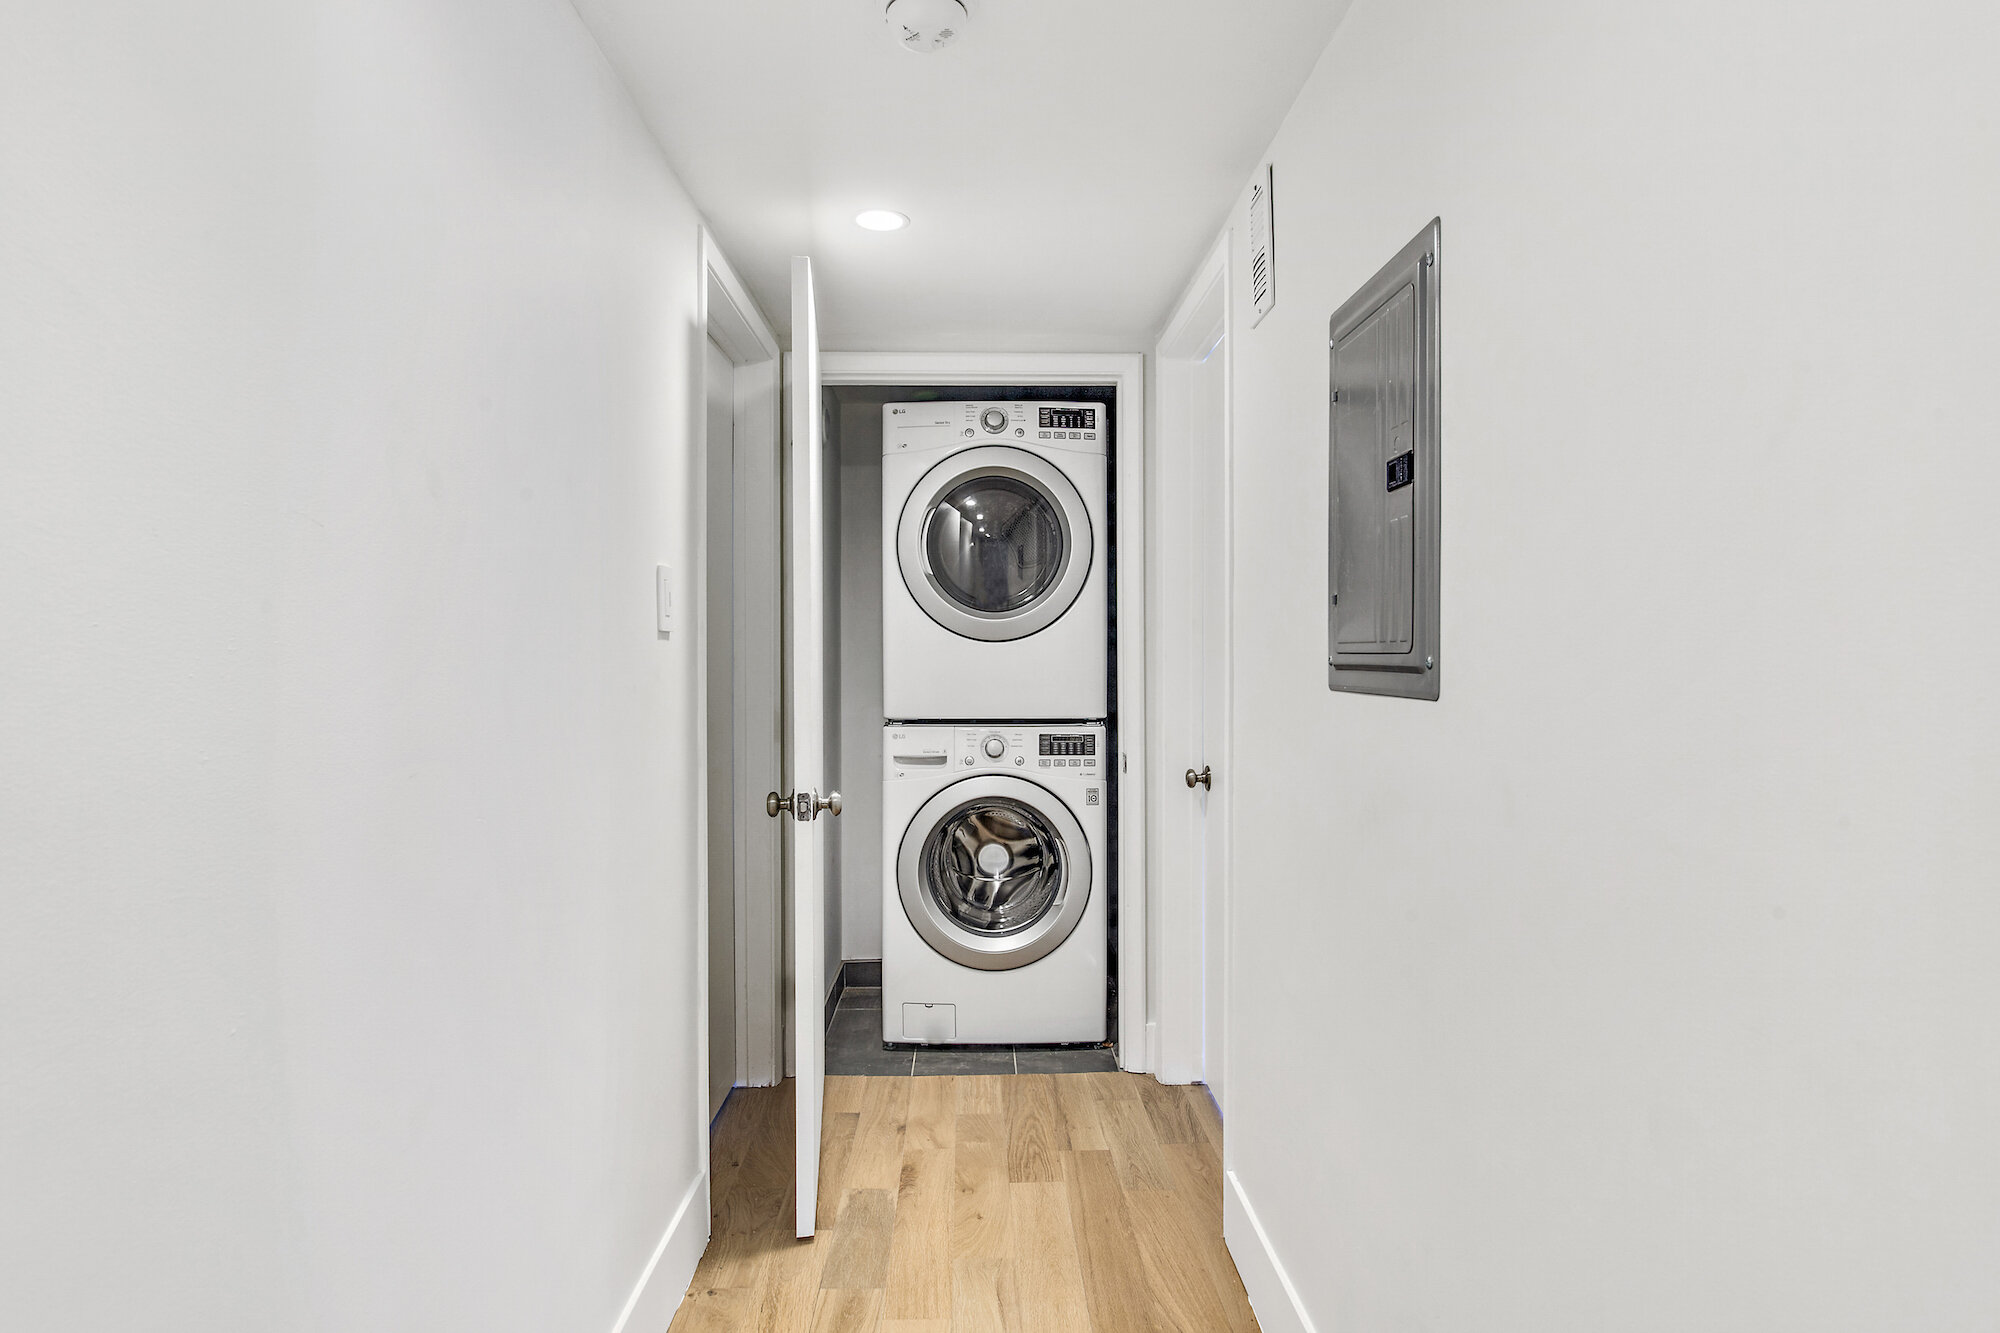 Oakhurst Moderne Beverly Hills Luxury Modern Apartment - Laundry